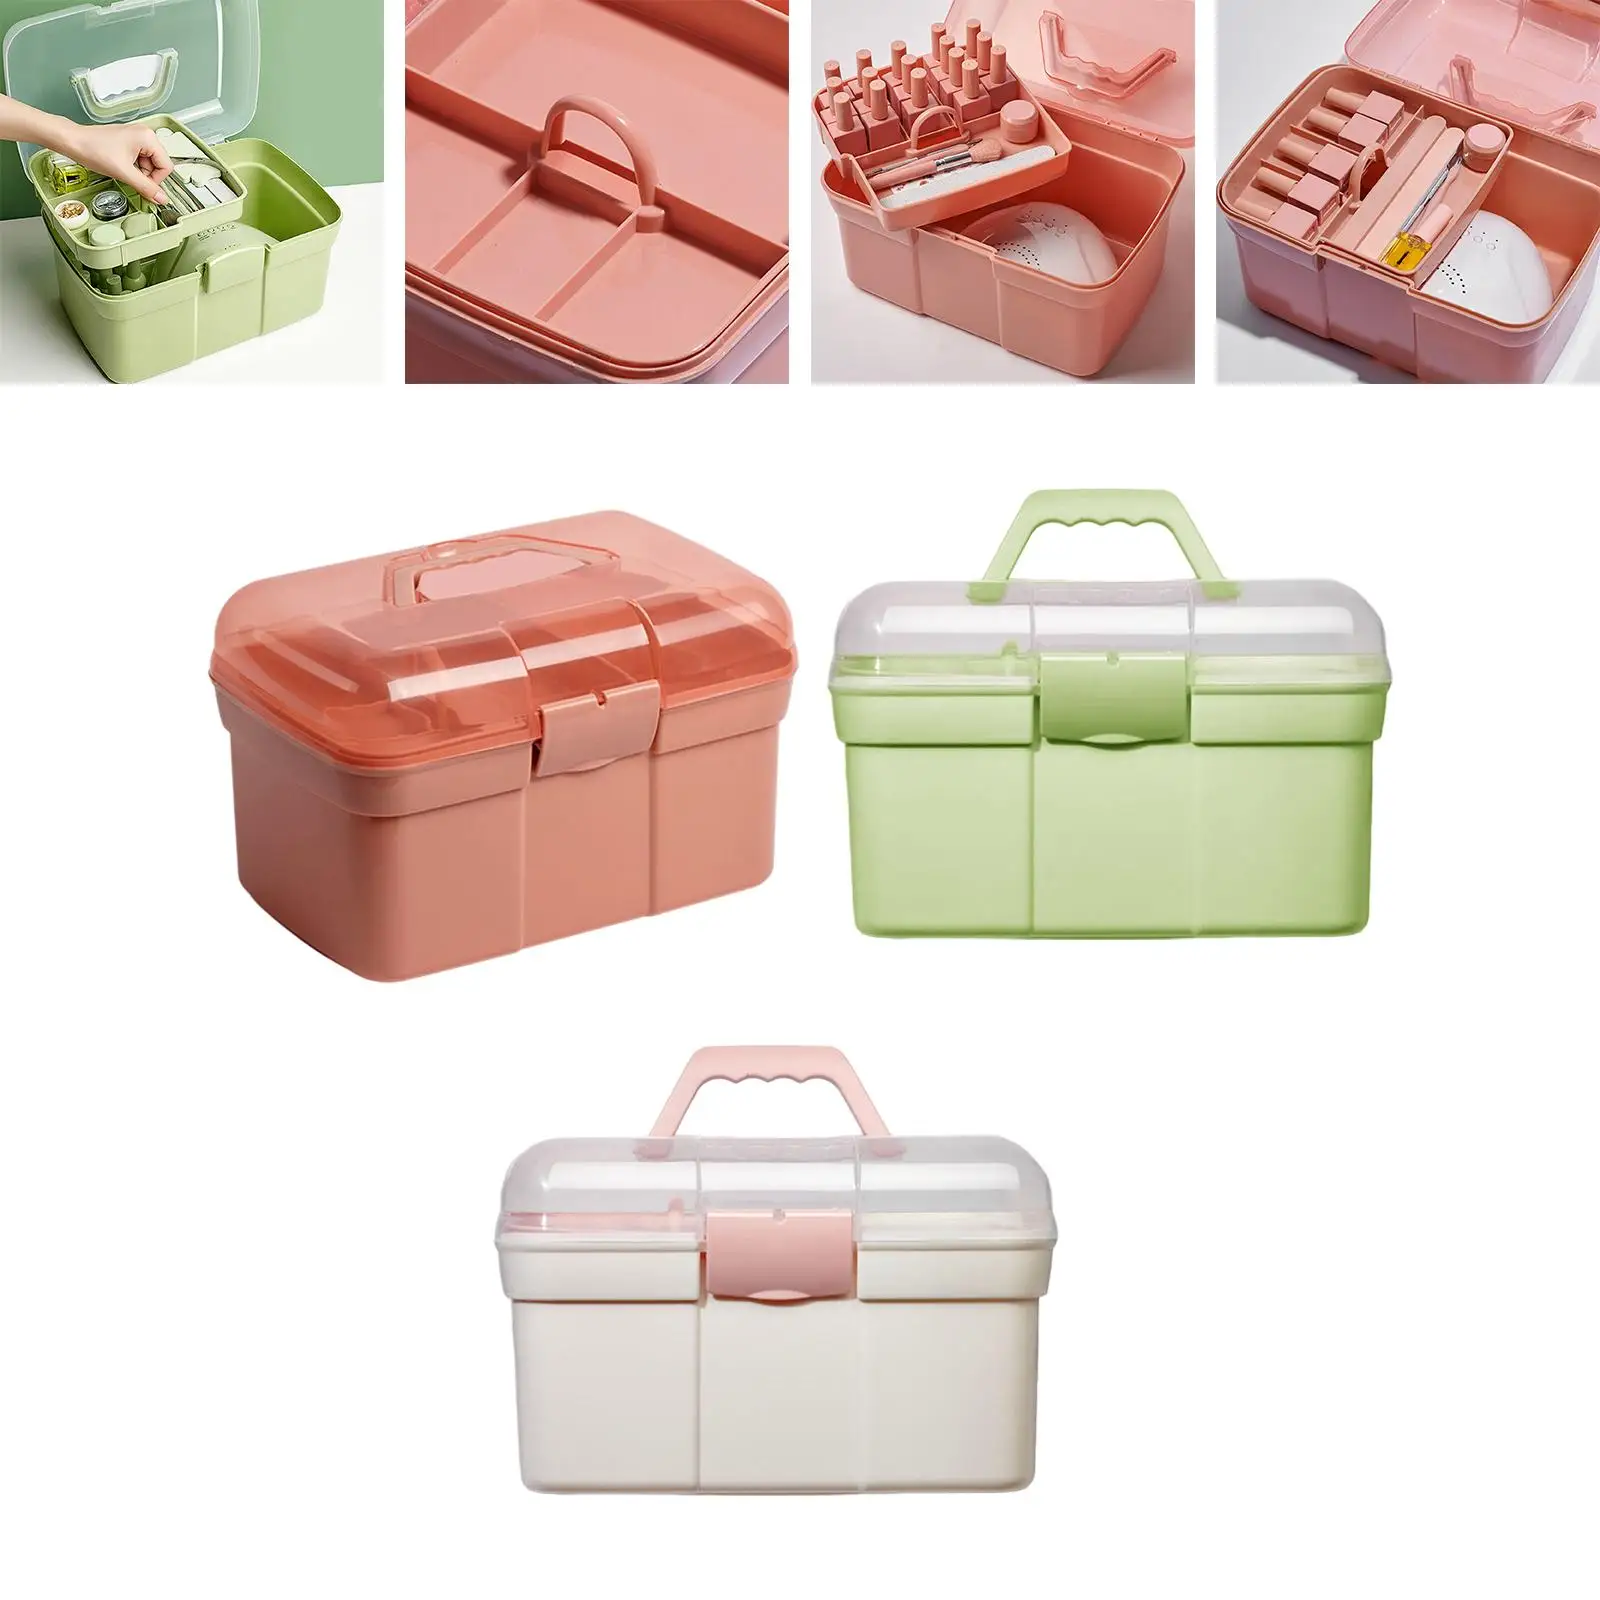 Portable Handled Storage Box 2 Tier Nail Polish Organizer Sewing Box for Nail Kits Makeup Sewing Manicure Tools Art Supply